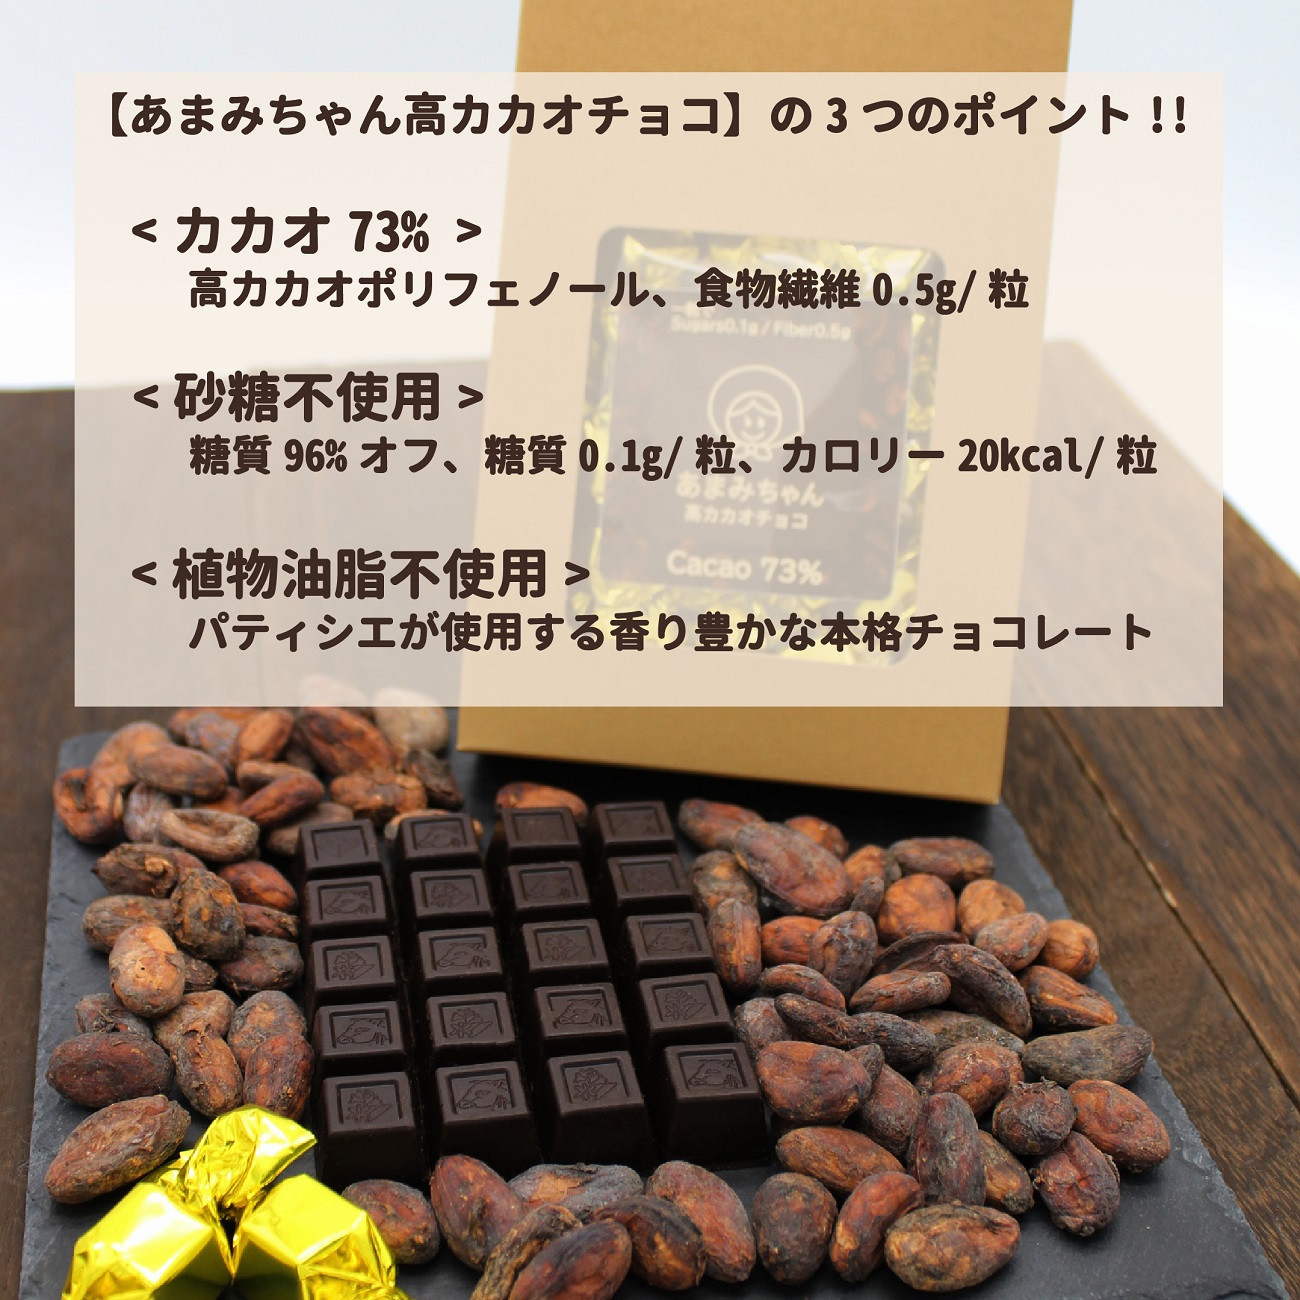 ふるさと納税 岐阜県 各務原市 613 カカオ70%チョコレートBOX